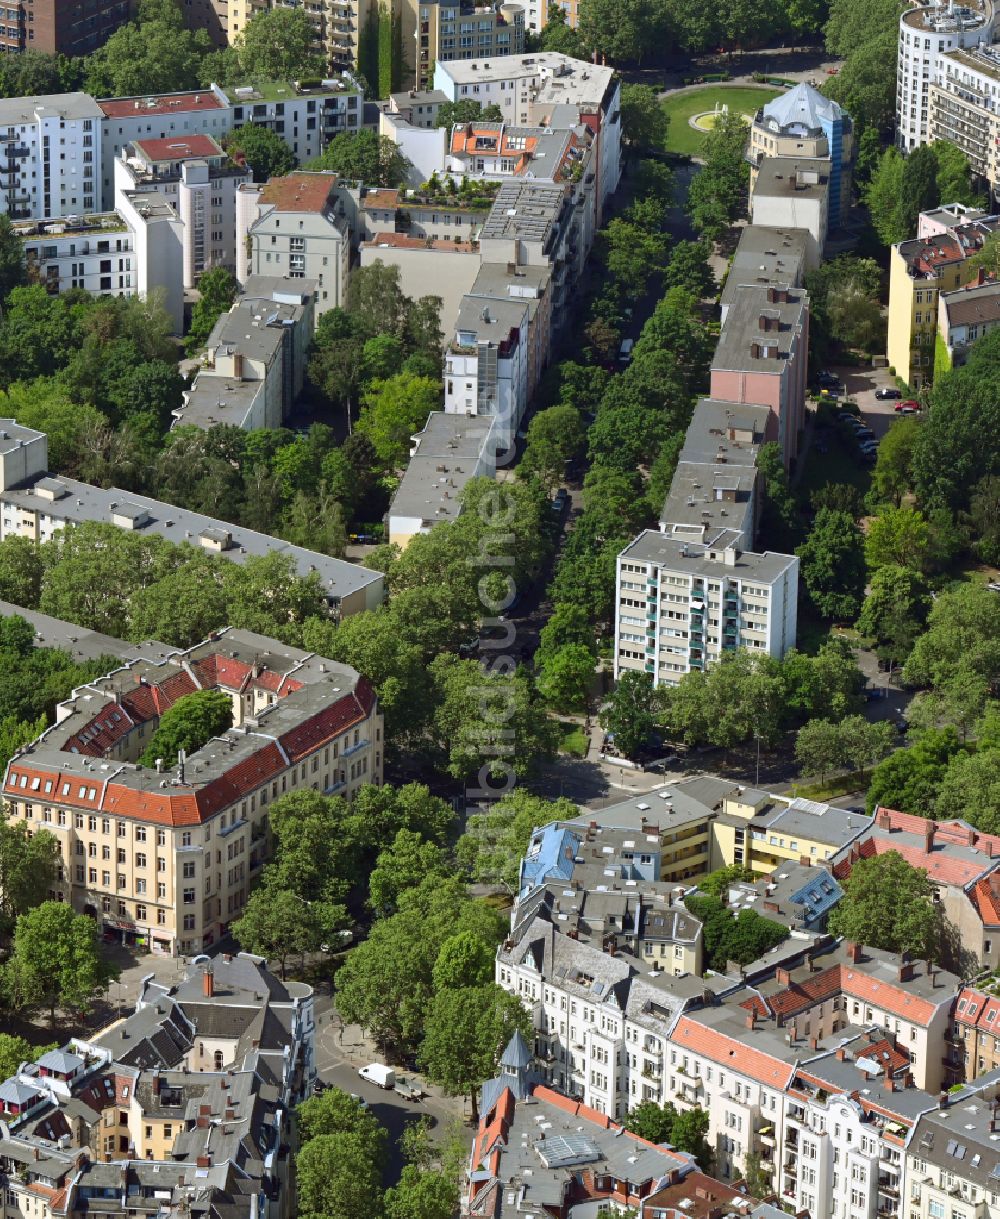 Berlin von oben - Wohngebiet der Mehrfamilienhaussiedlung entlang der Motzstraße mündend auf den Prager Platz in Berlin, Deutschland